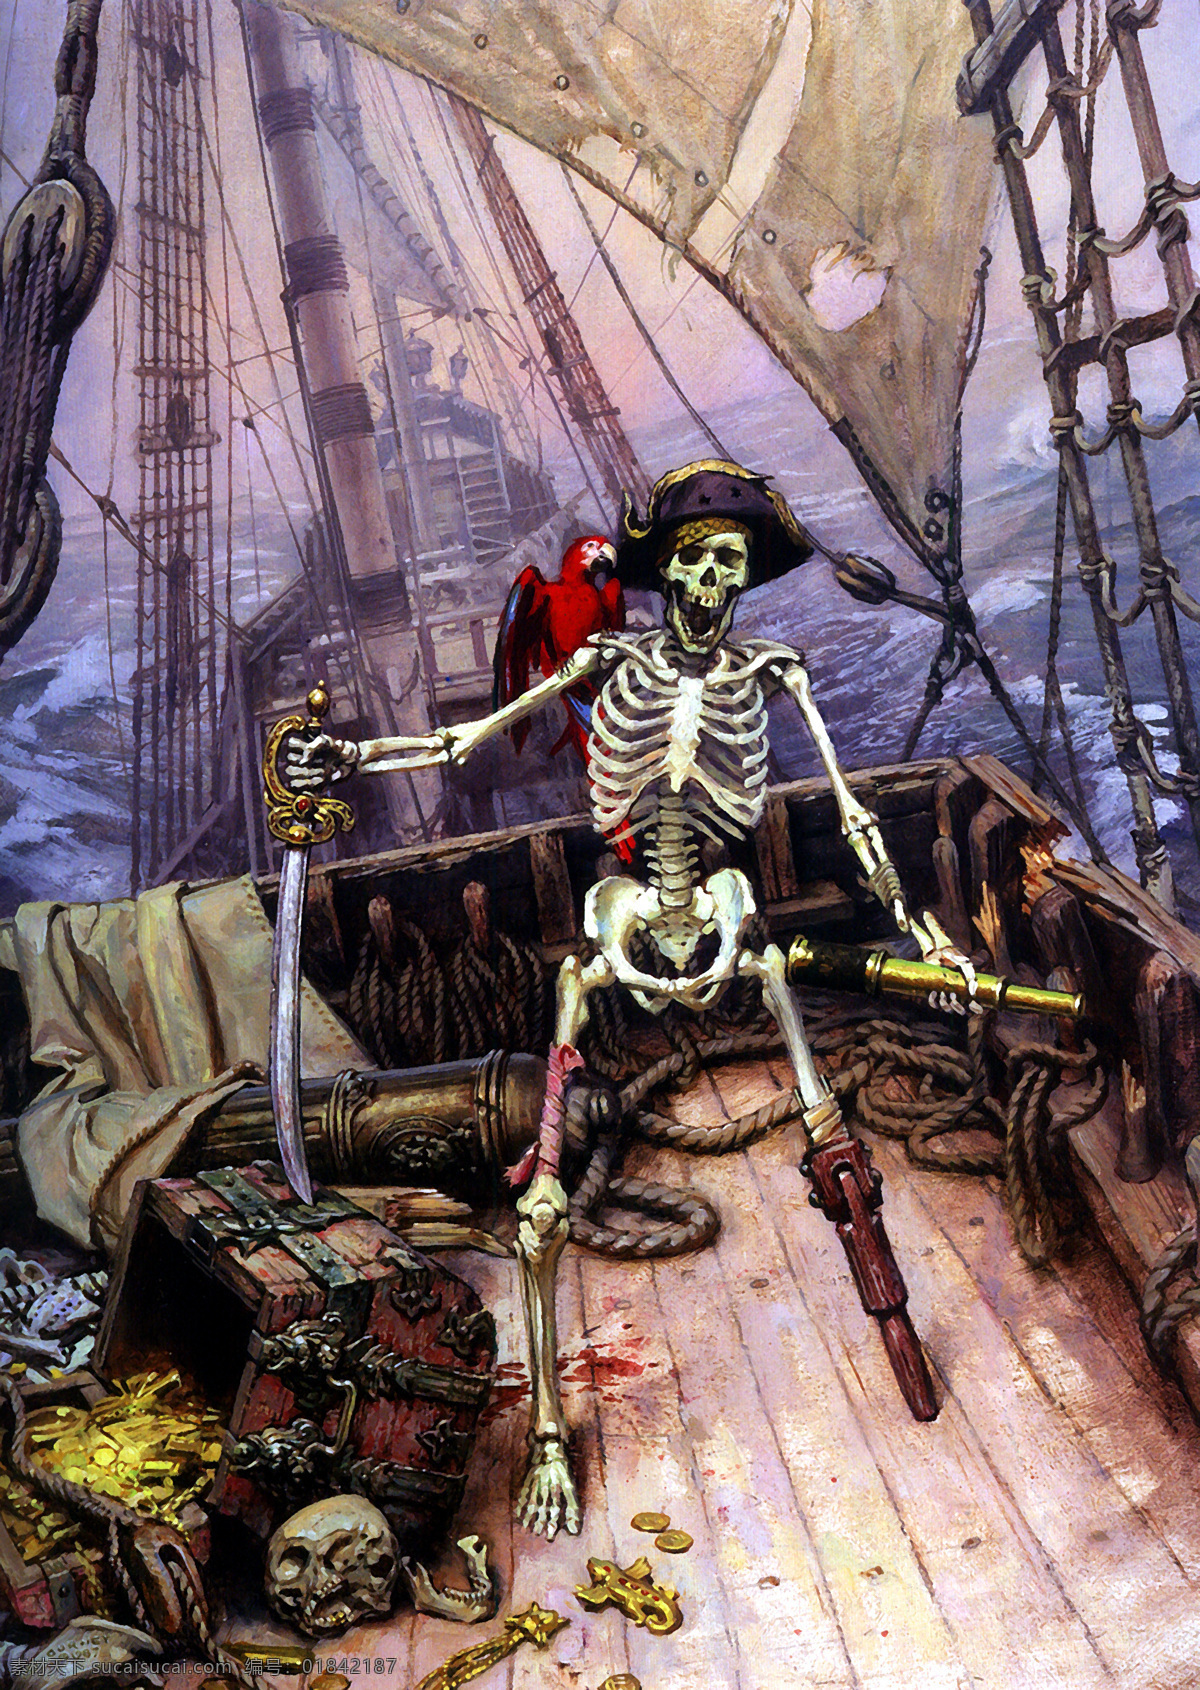 骷髅海盗 骷髅 海盗 船长 传说 恐怖 趣味 加勒比海盗 绘本 绘画书法 文化艺术